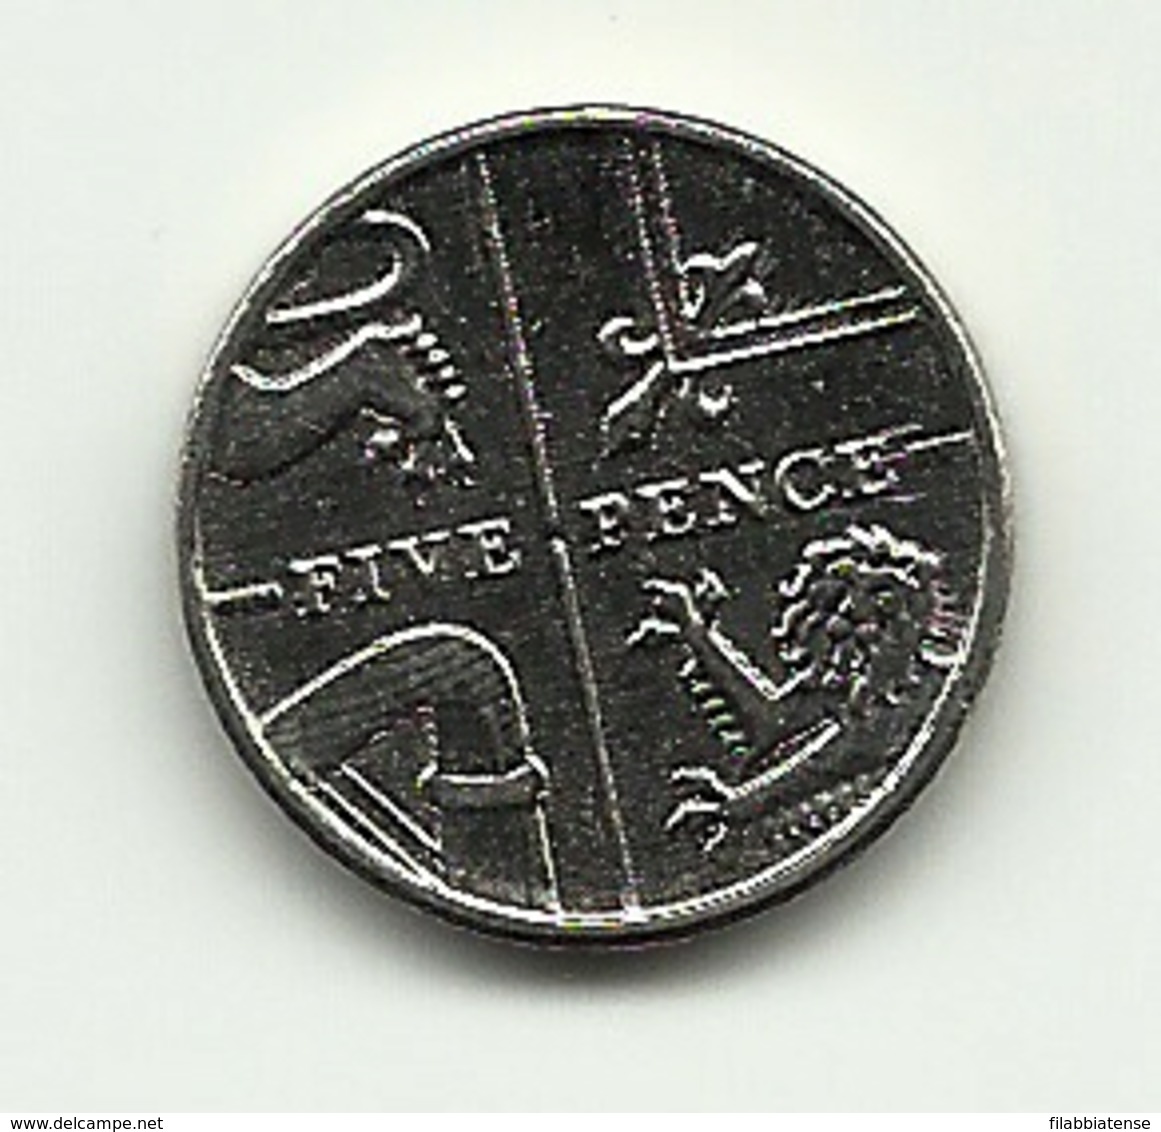 2015 - Gran Bretagna 5 Pence - 5 Pence & 5 New Pence